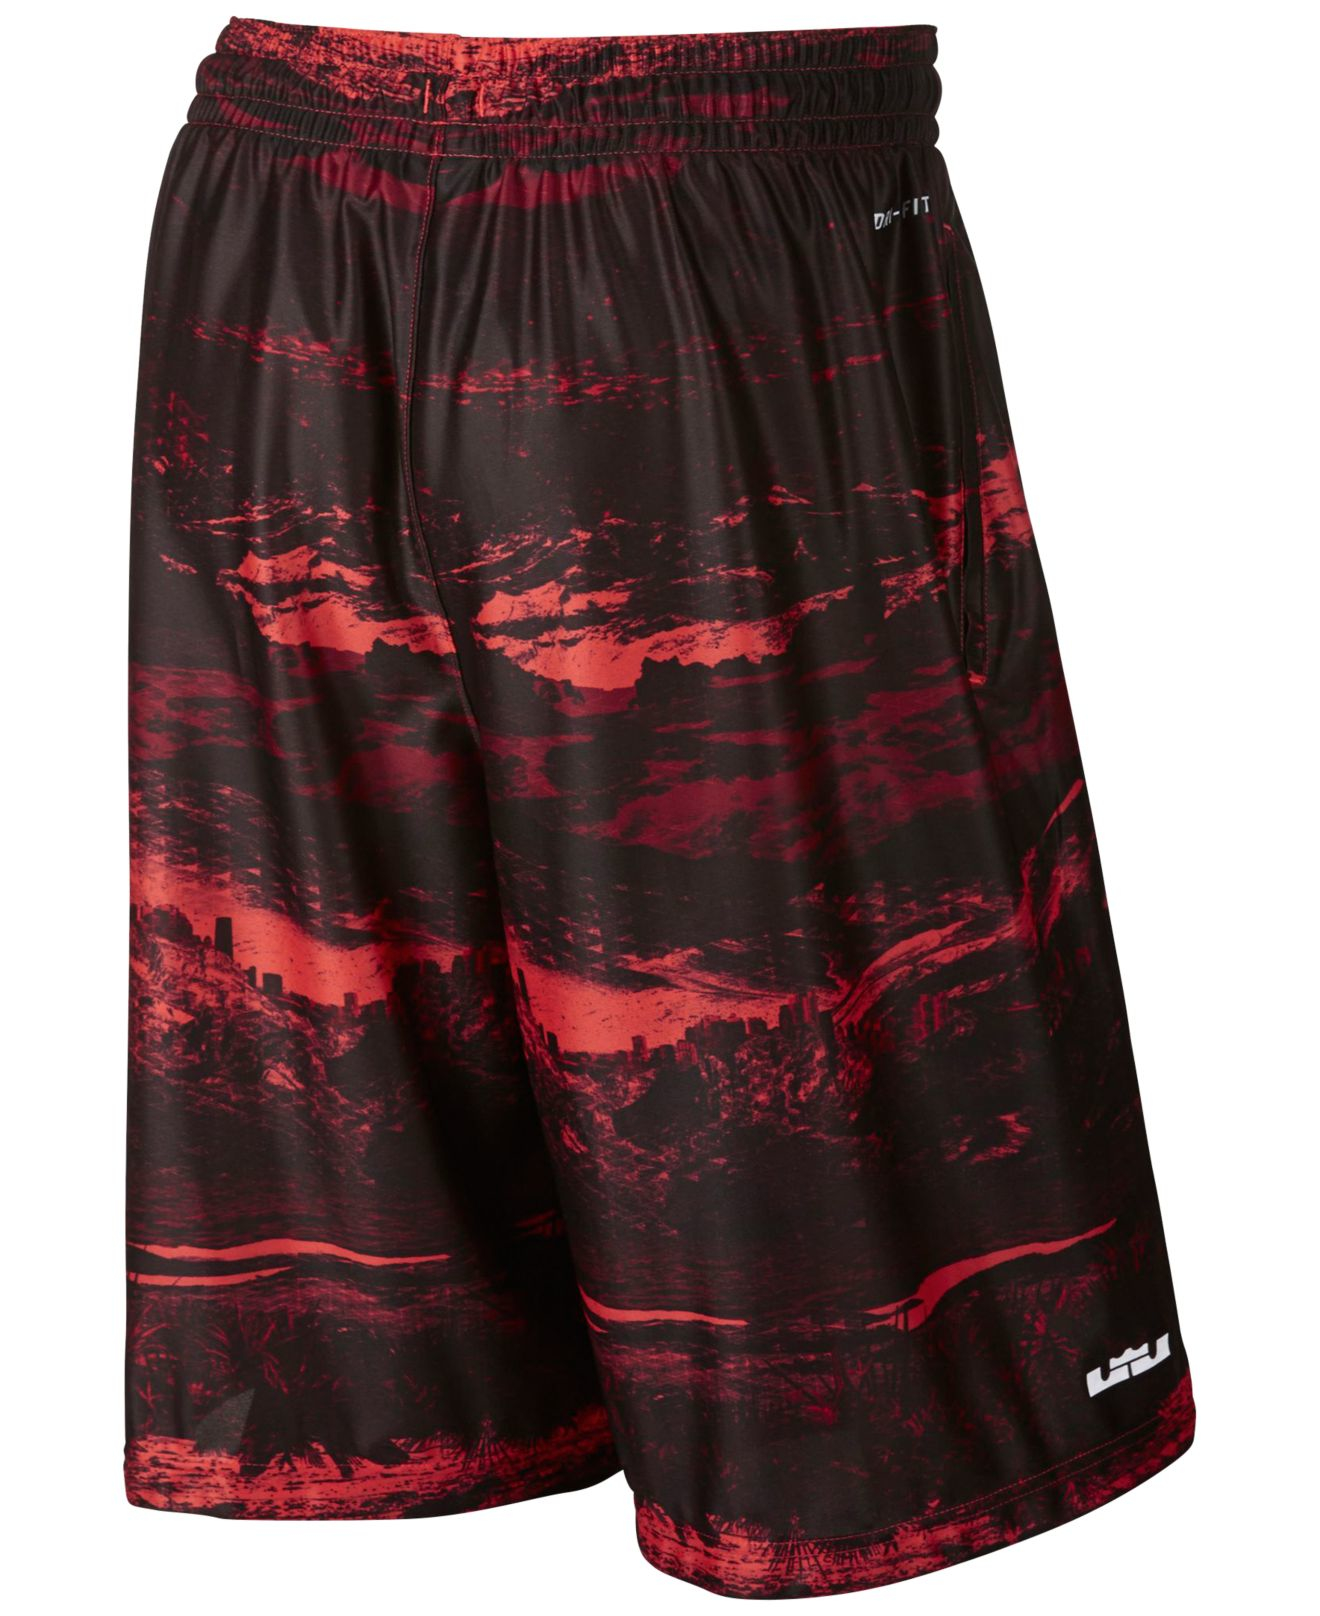 New Nike Dri-FIT Elite Basketball Shorts Mens Sizes + Colors KOBE Lebron KD